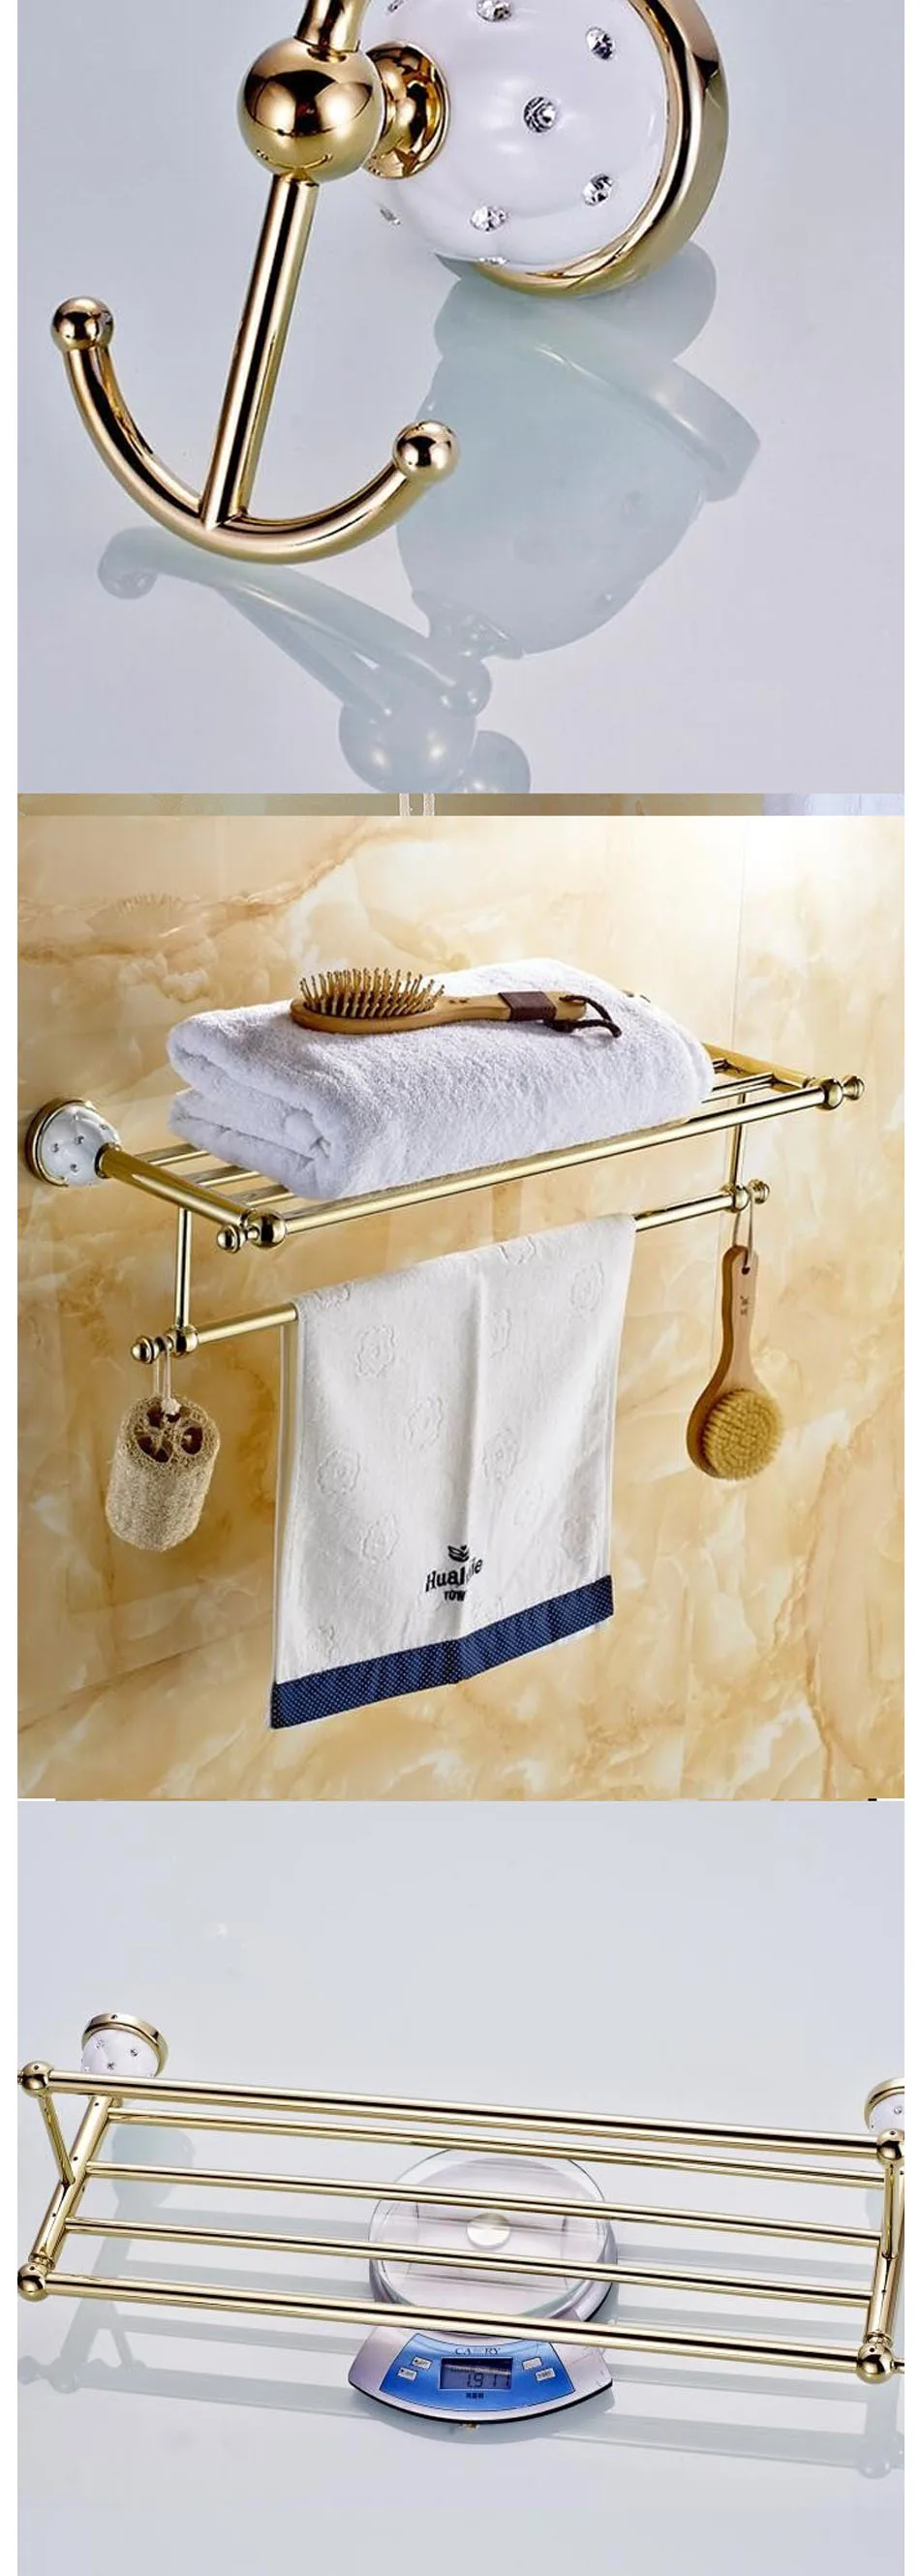 Наборы аксессуаров для ванной комнаты со звездами и кристаллами, твердая латунная Золотая фурнитура, настенный набор аксессуаров для ванной Q55